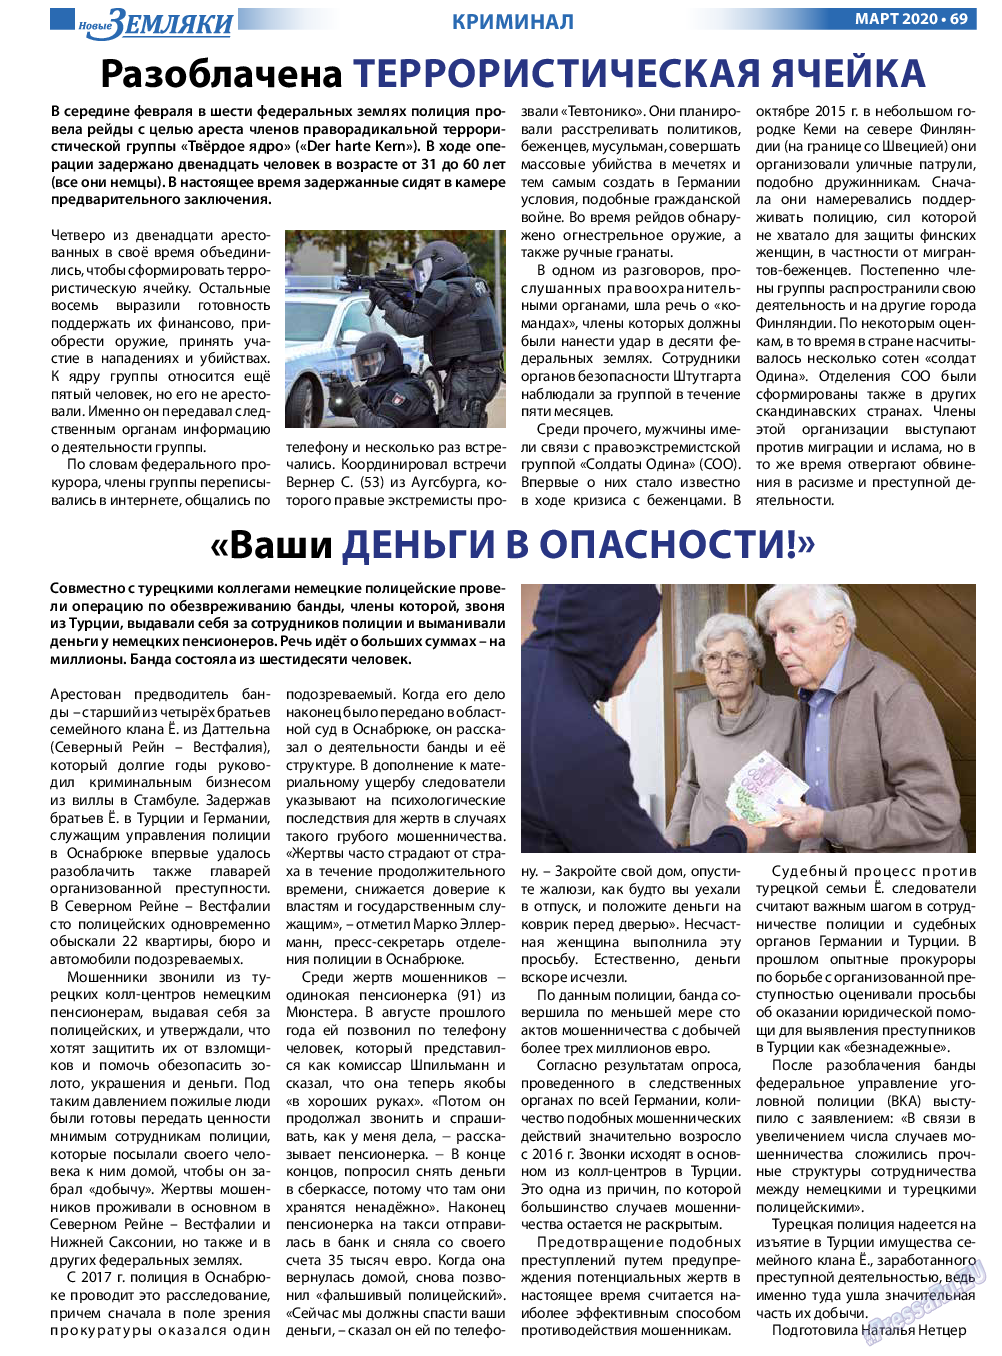 Новые Земляки, газета. 2020 №3 стр.69